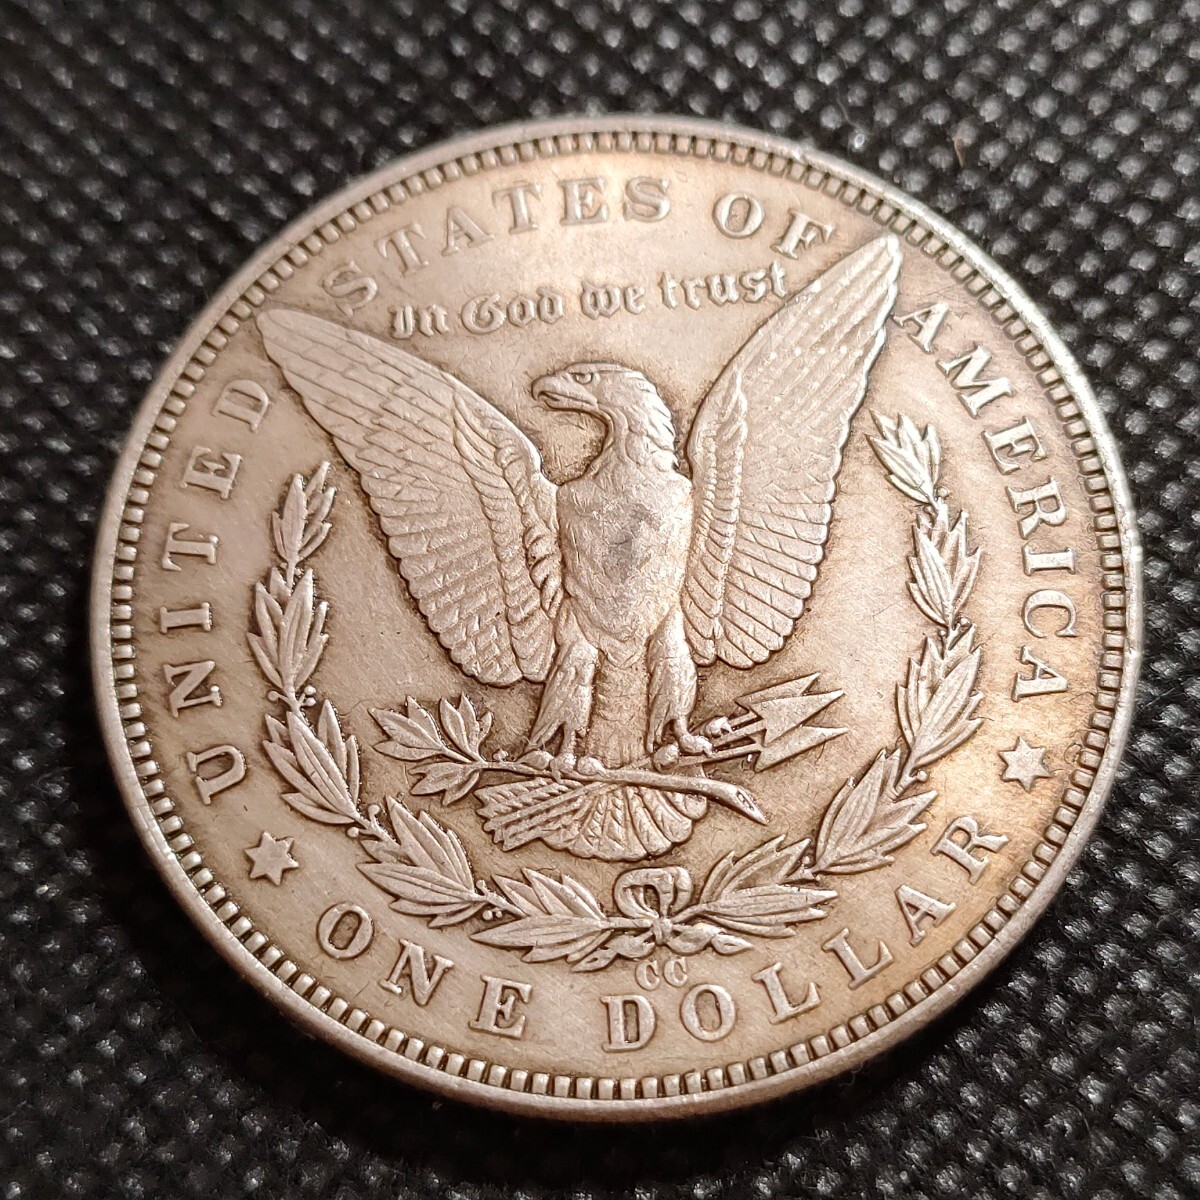 4829 アメリカ古銭 ルンペン貨幣 約38mm イーグル チャレンジコイン ゴルフマーカー コイン アンティーク ホーボーの画像2